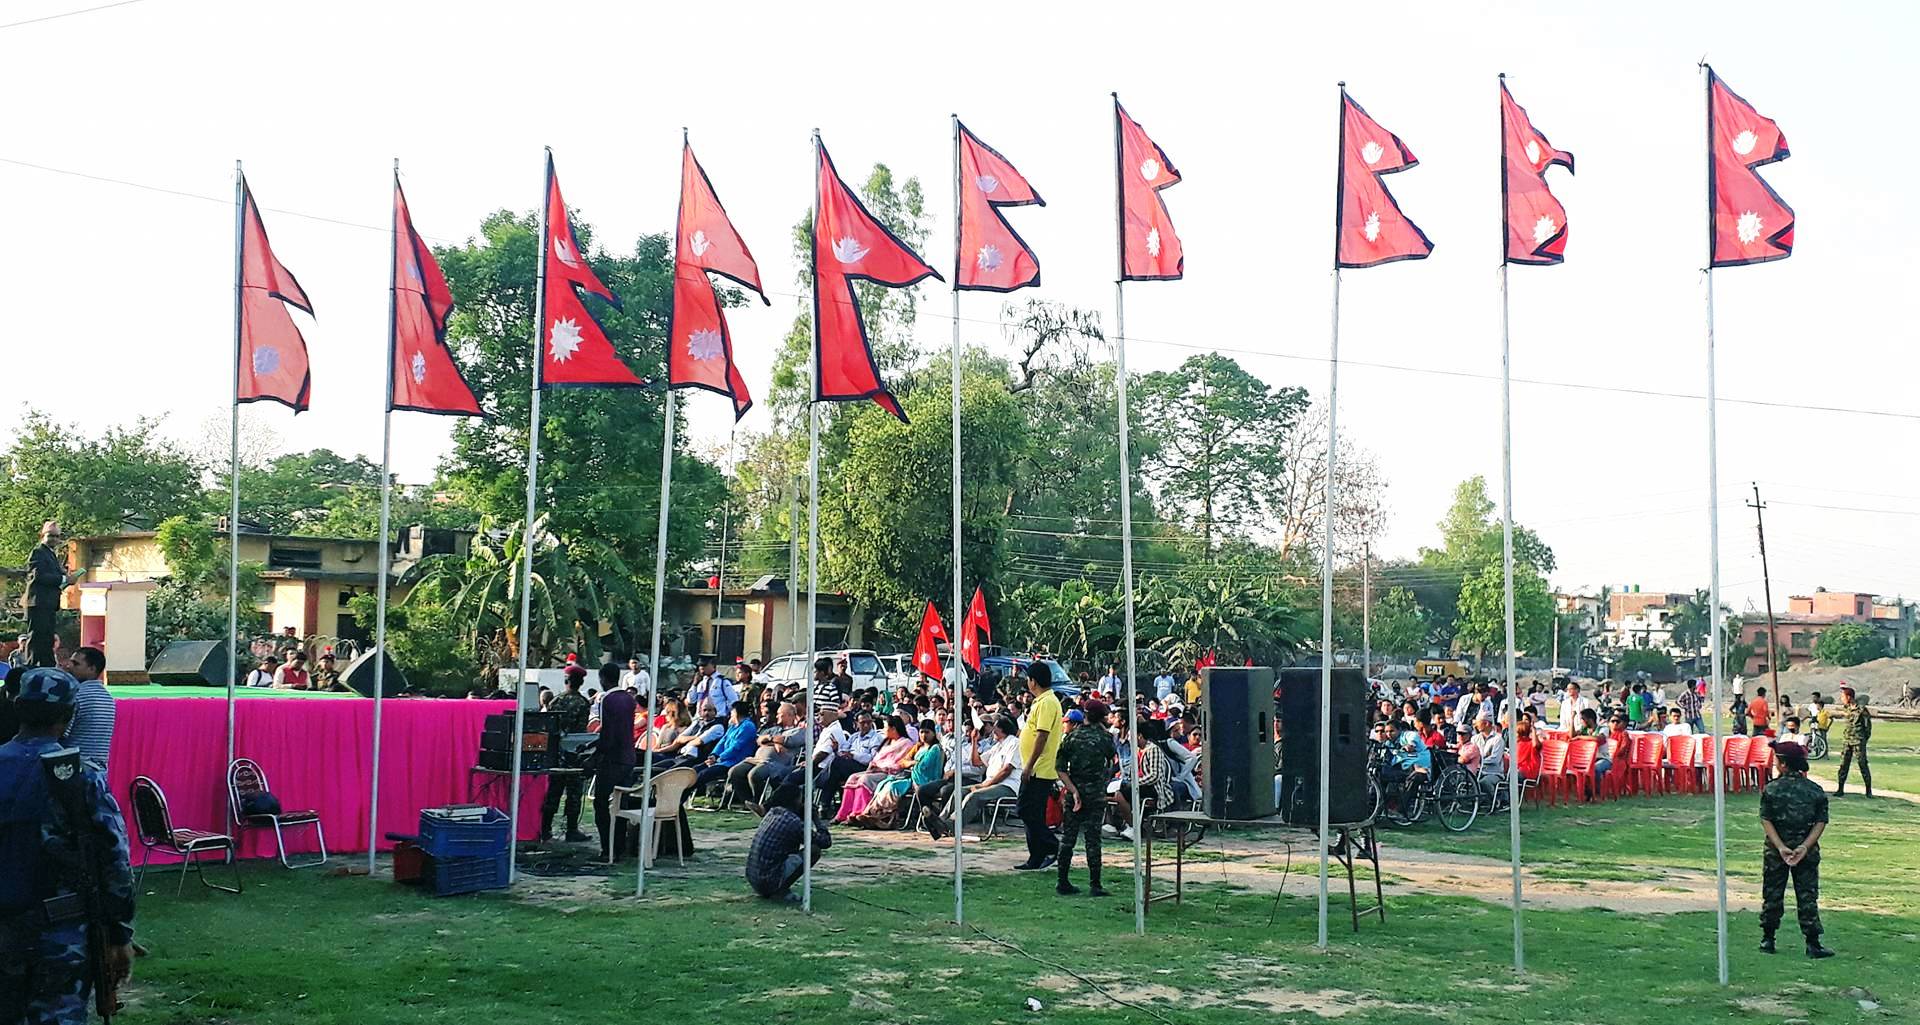 नेपालगञ्जमा राष्ट्रिय झण्डा दिवस : नेपाली बिबिधता भित्र राष्ट्रियता र भावनात्मक एकता जागृत राख्न बैशाख १ गते राष्ट्रिय झण्डा दिवस मनाउन नागरिक स्तरबाट जोड